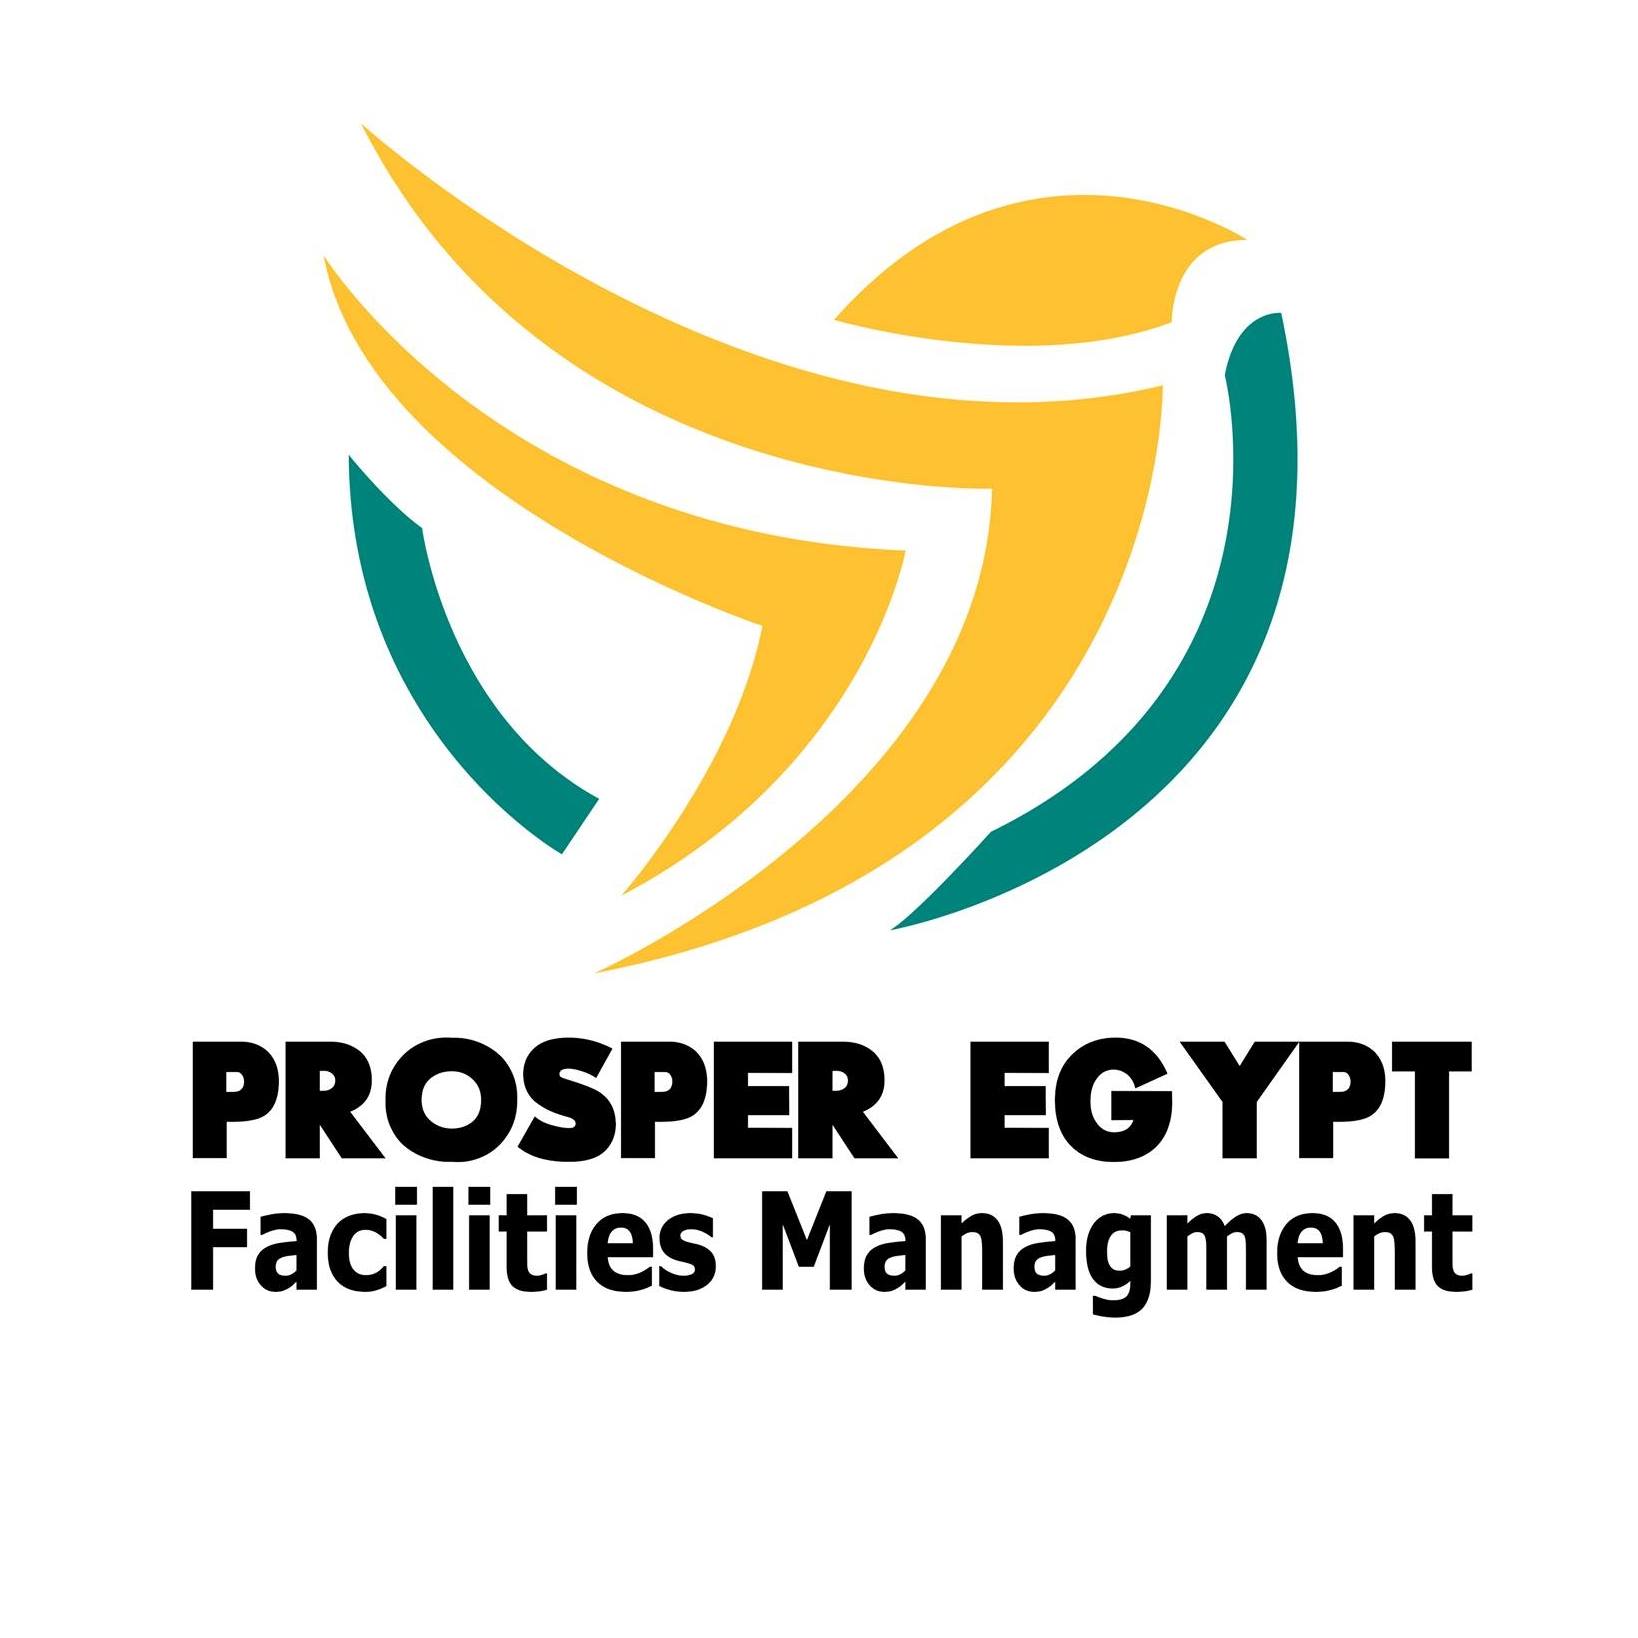 Prosper Egypt